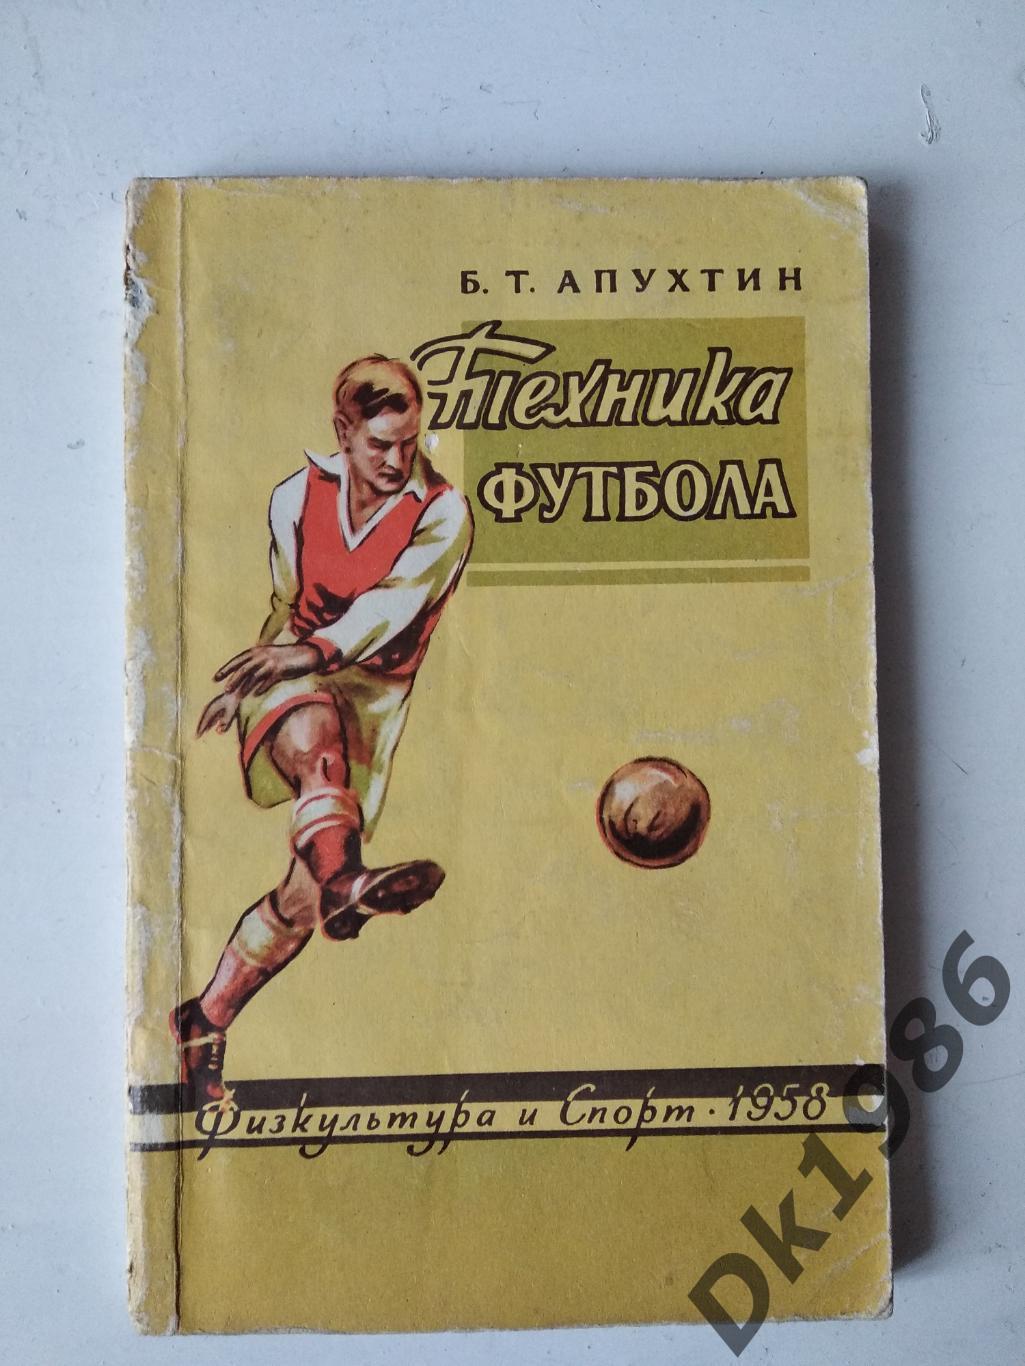 Б.Т.Апухтін Техніка іутболу, 1958 рік